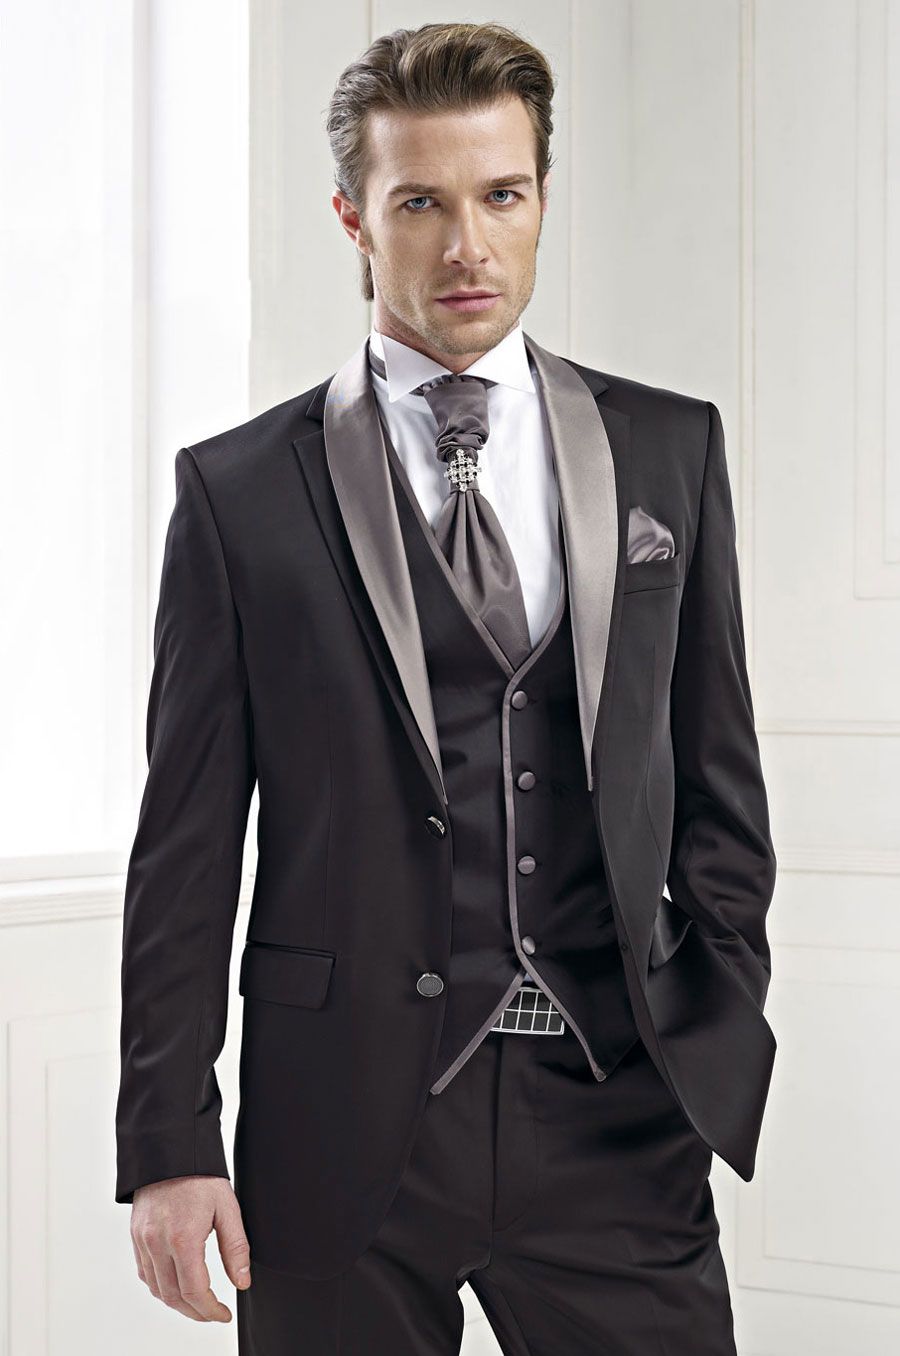 Men Suits 2015 Black Wedding Suits For Men Shawl Lapel